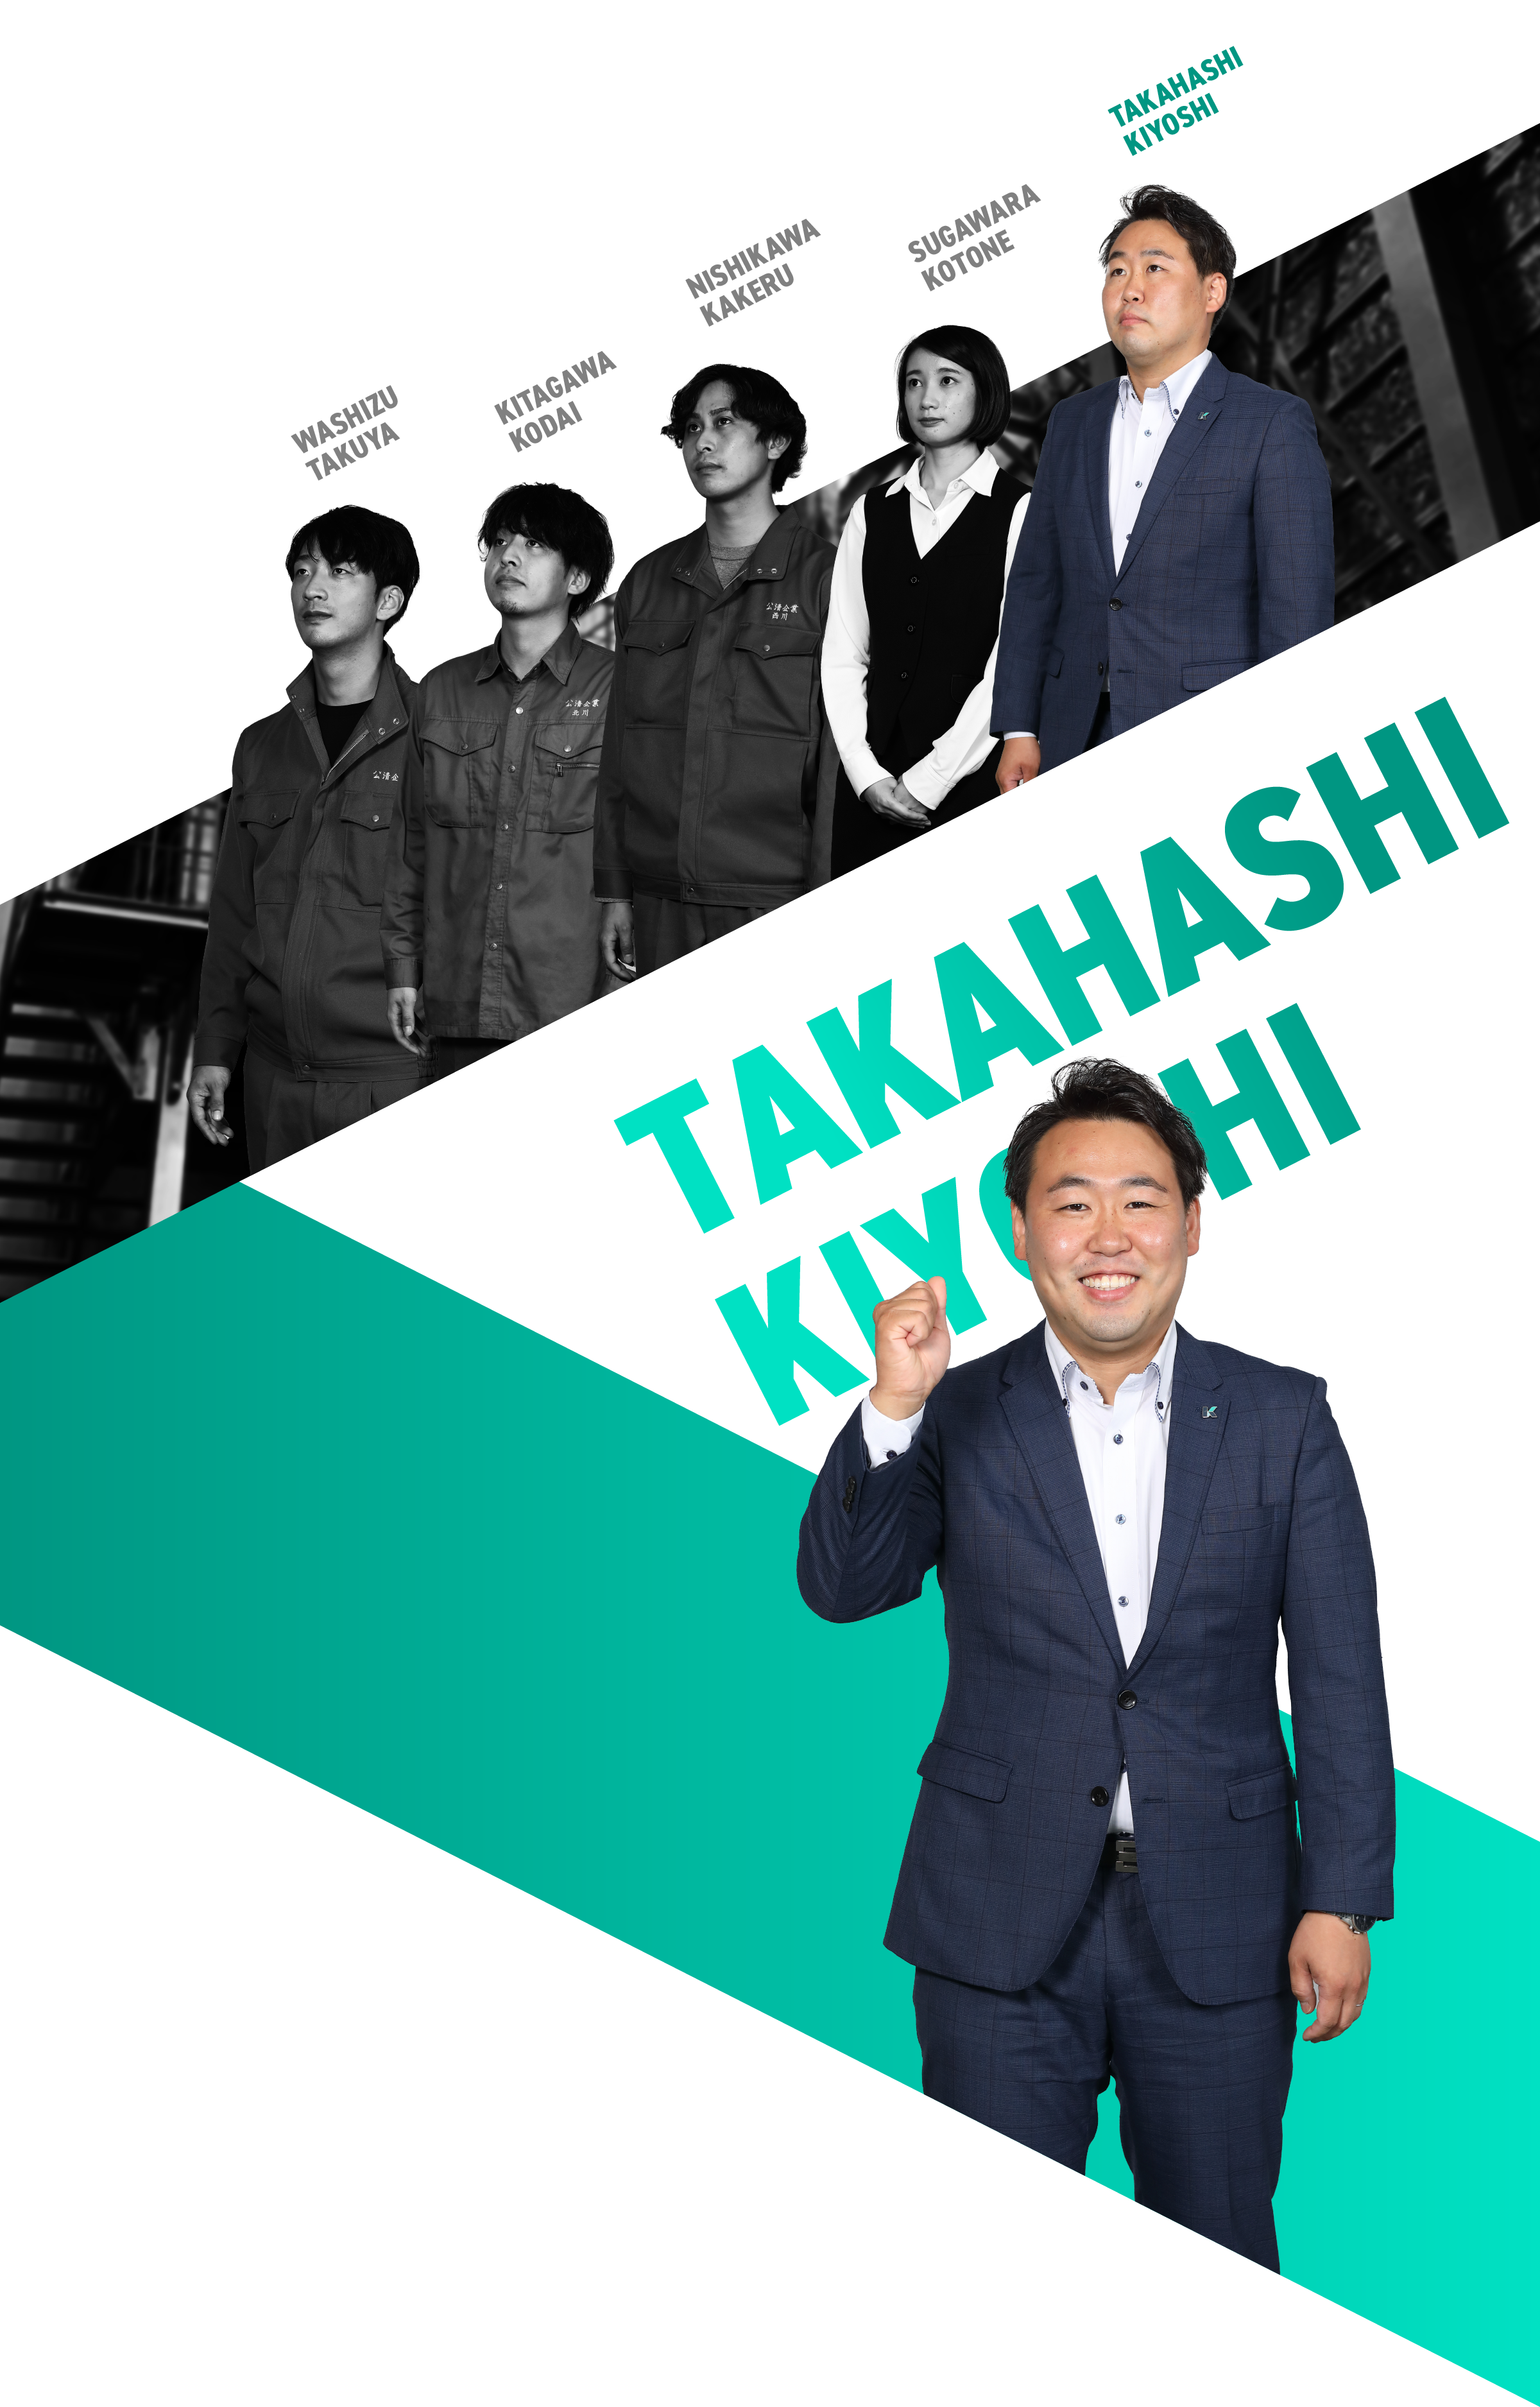 Takahashi Kiyoshi